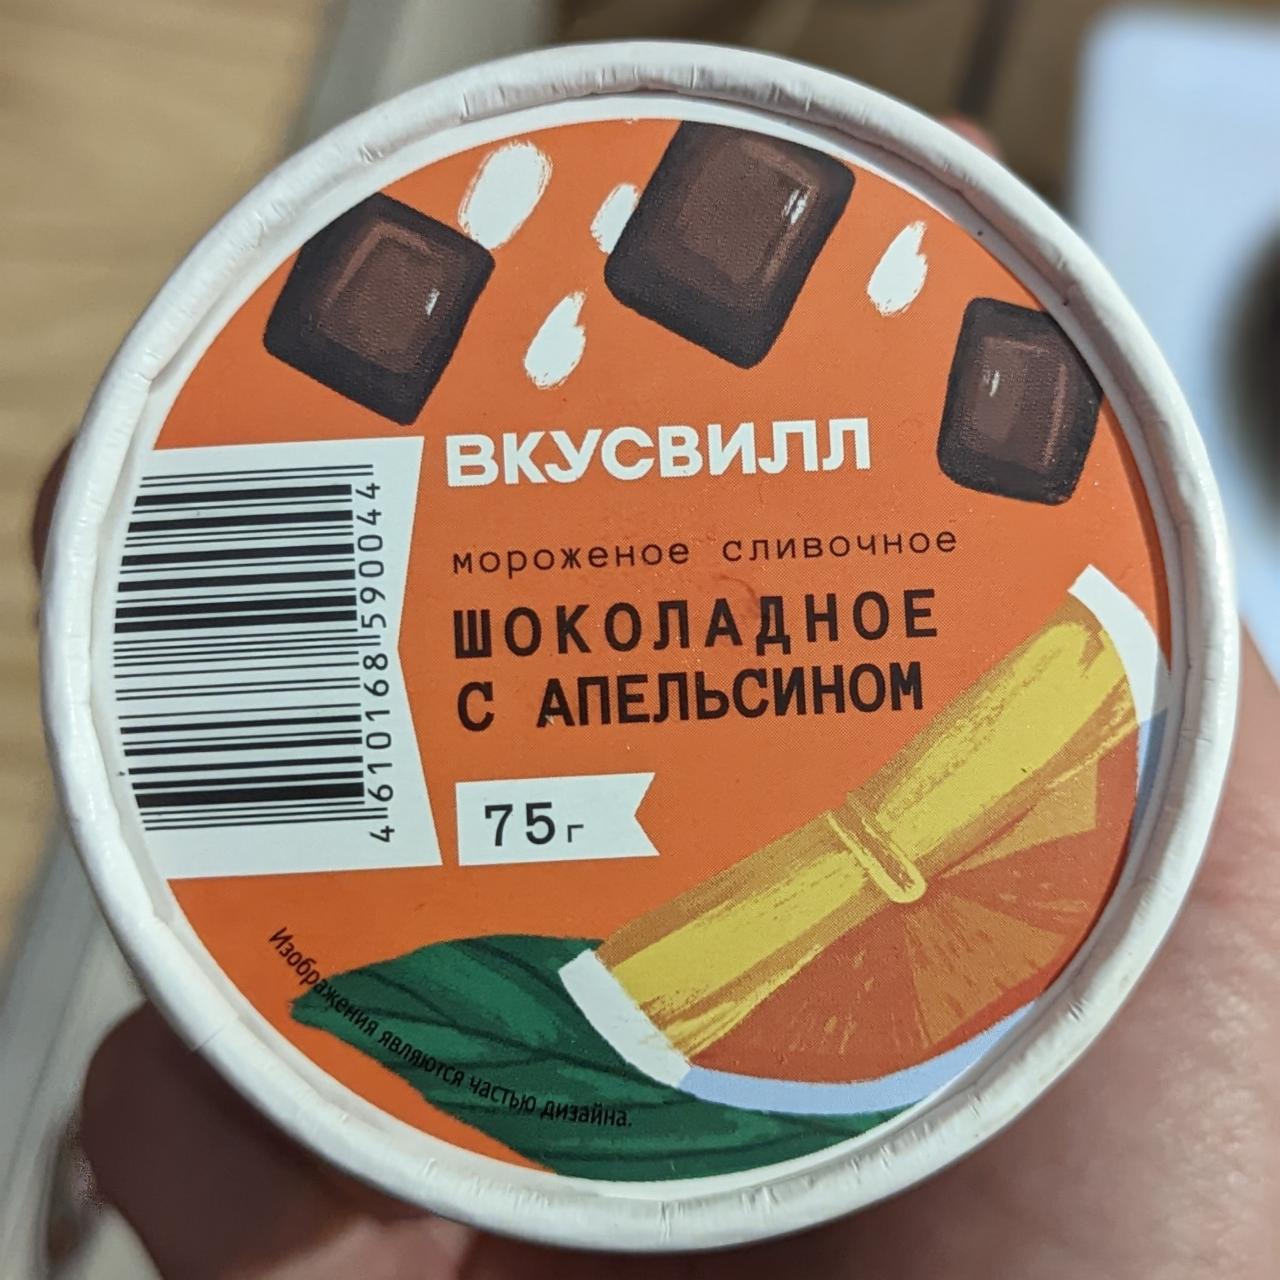 Фото - Мороженое сливочное шоколадное с апельсином ВкусВилл 